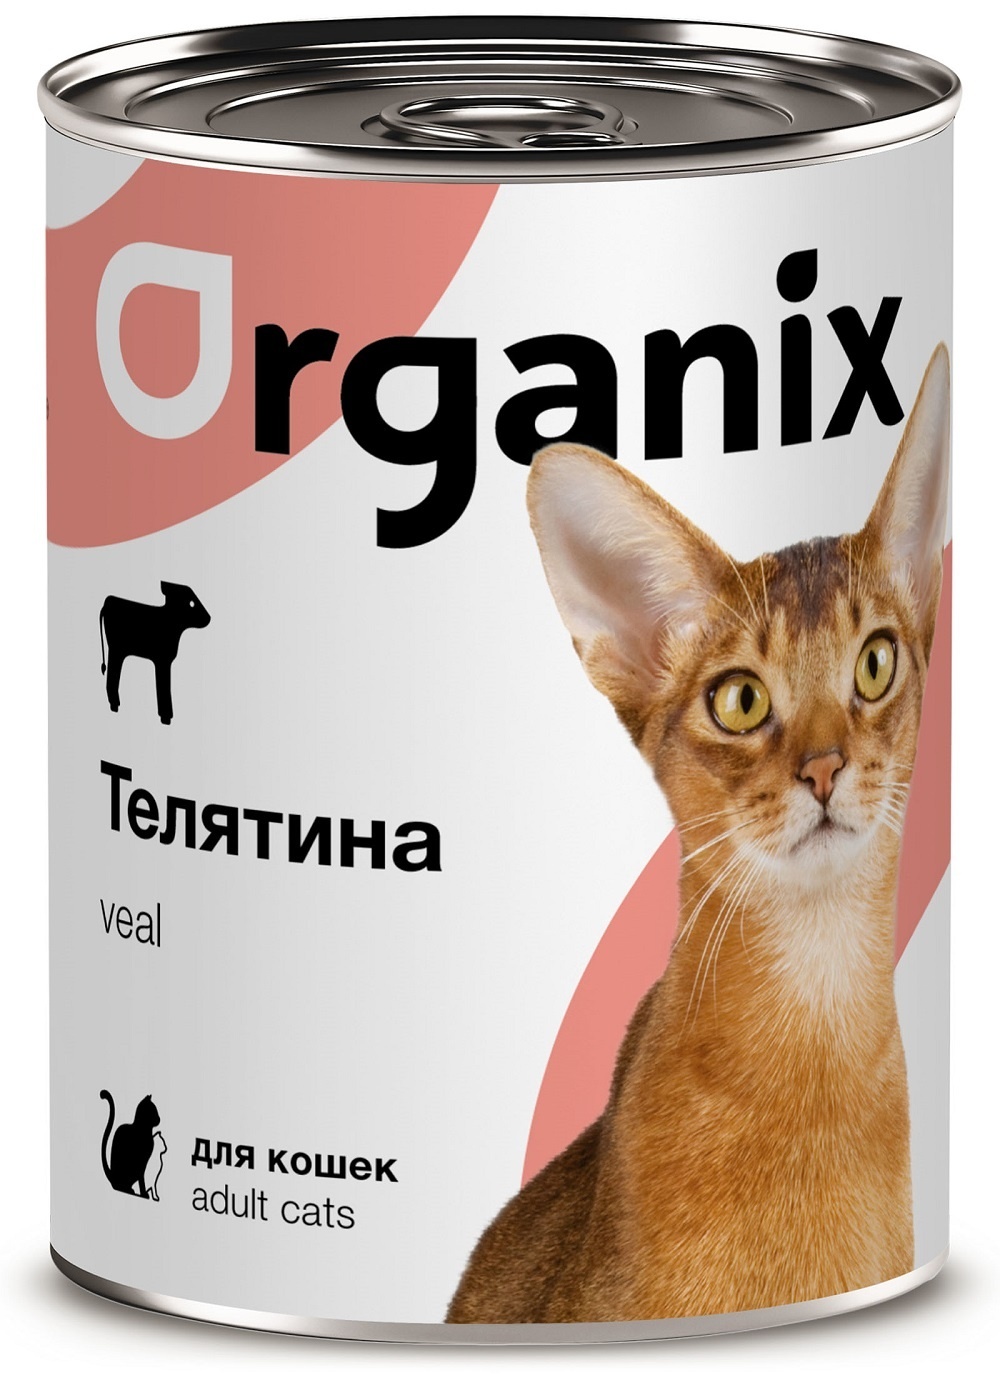 Organix консервы Organix консервы с телятиной для кошек (410 г) organix консервы organix консервы с говядиной и перепелкой для кошек 410 г